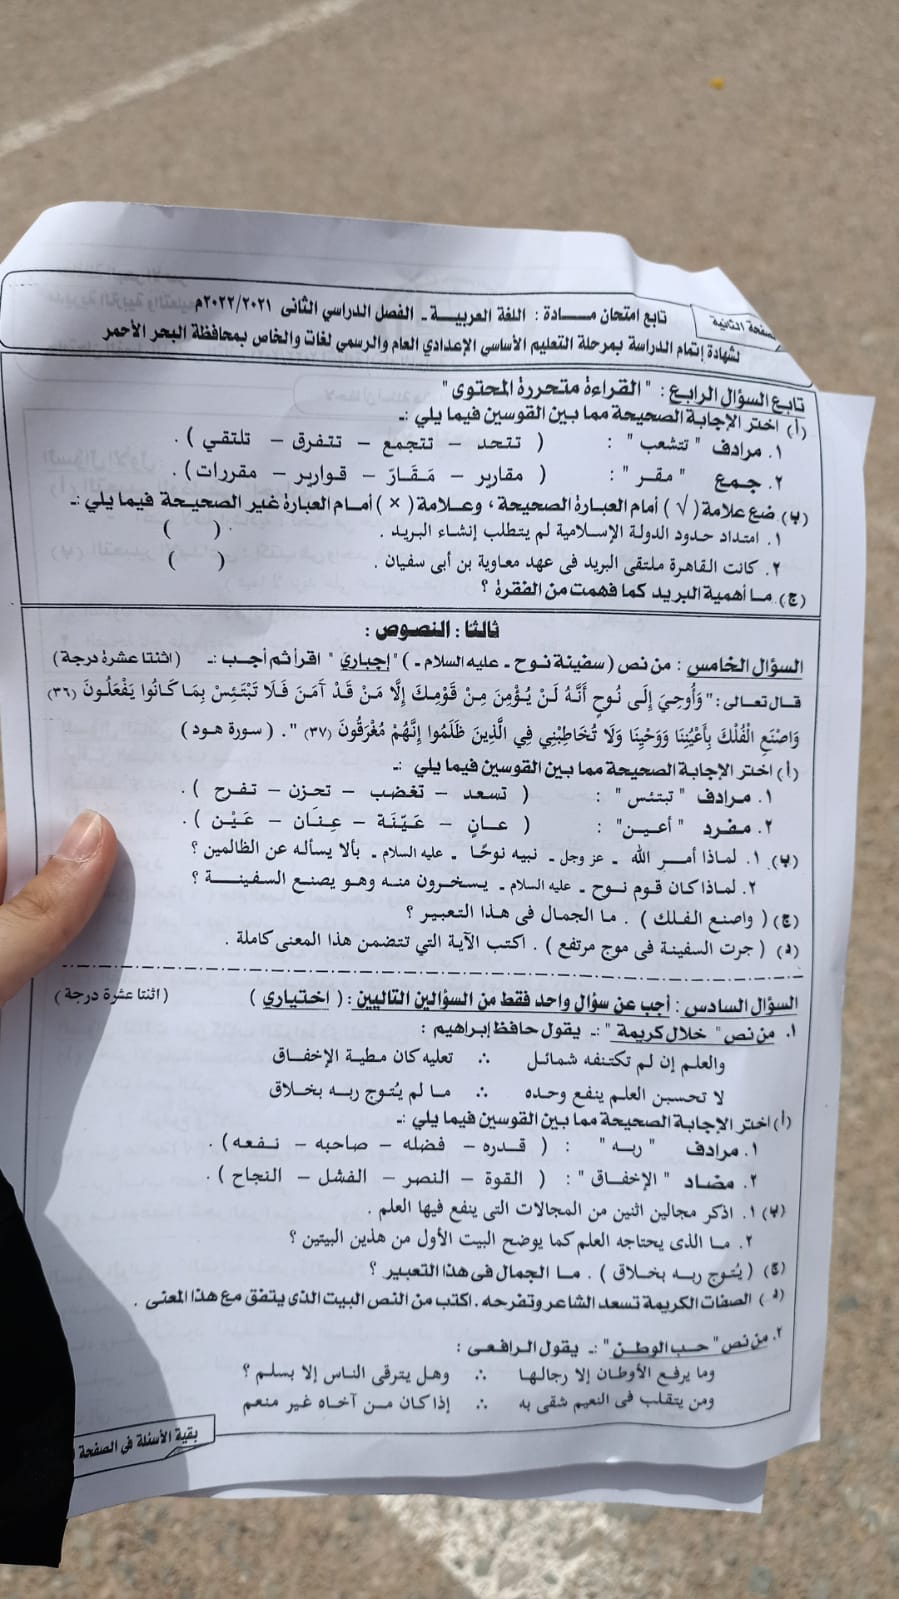 امتحان اللغة العربية للصف الثالث الاعدادي الترم الثاني 2022 محافظة البحر الأحمر 2422